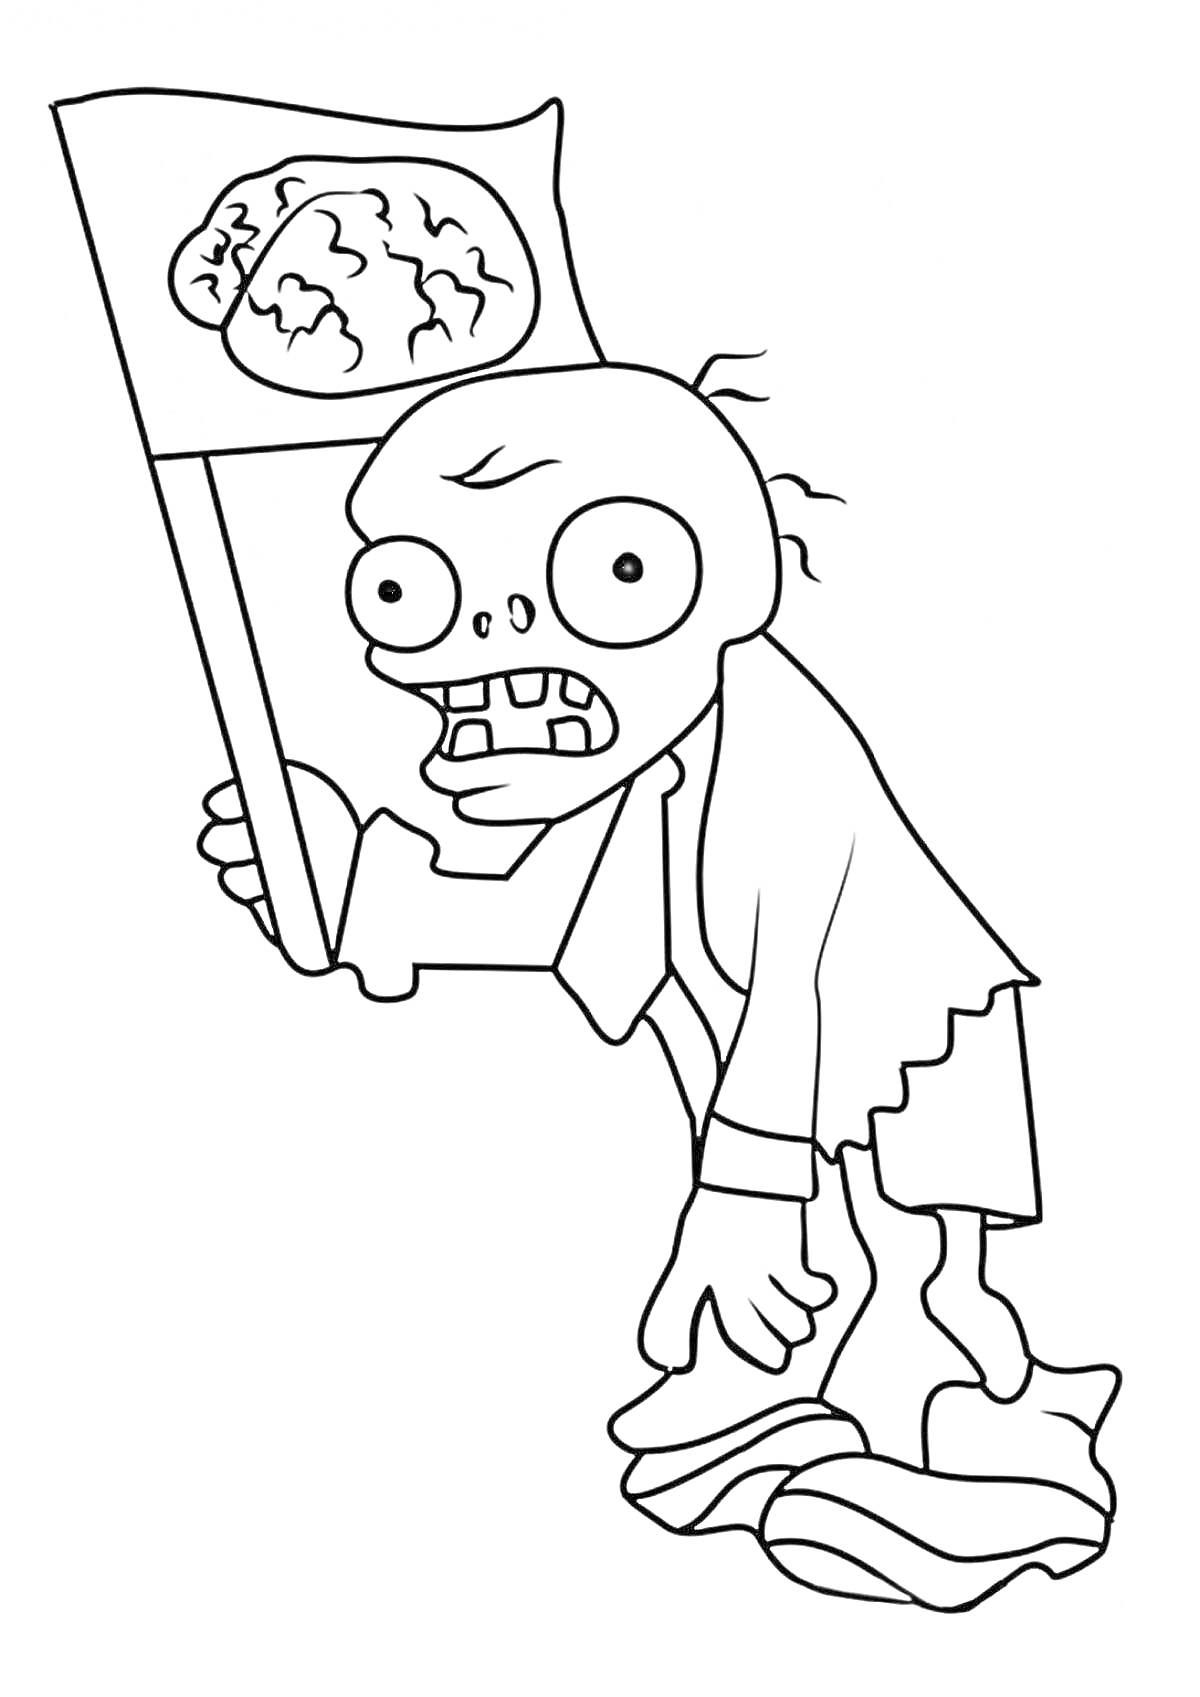 Раскраска Зомби с флагом, на котором изображен мозг, в порванной одежде